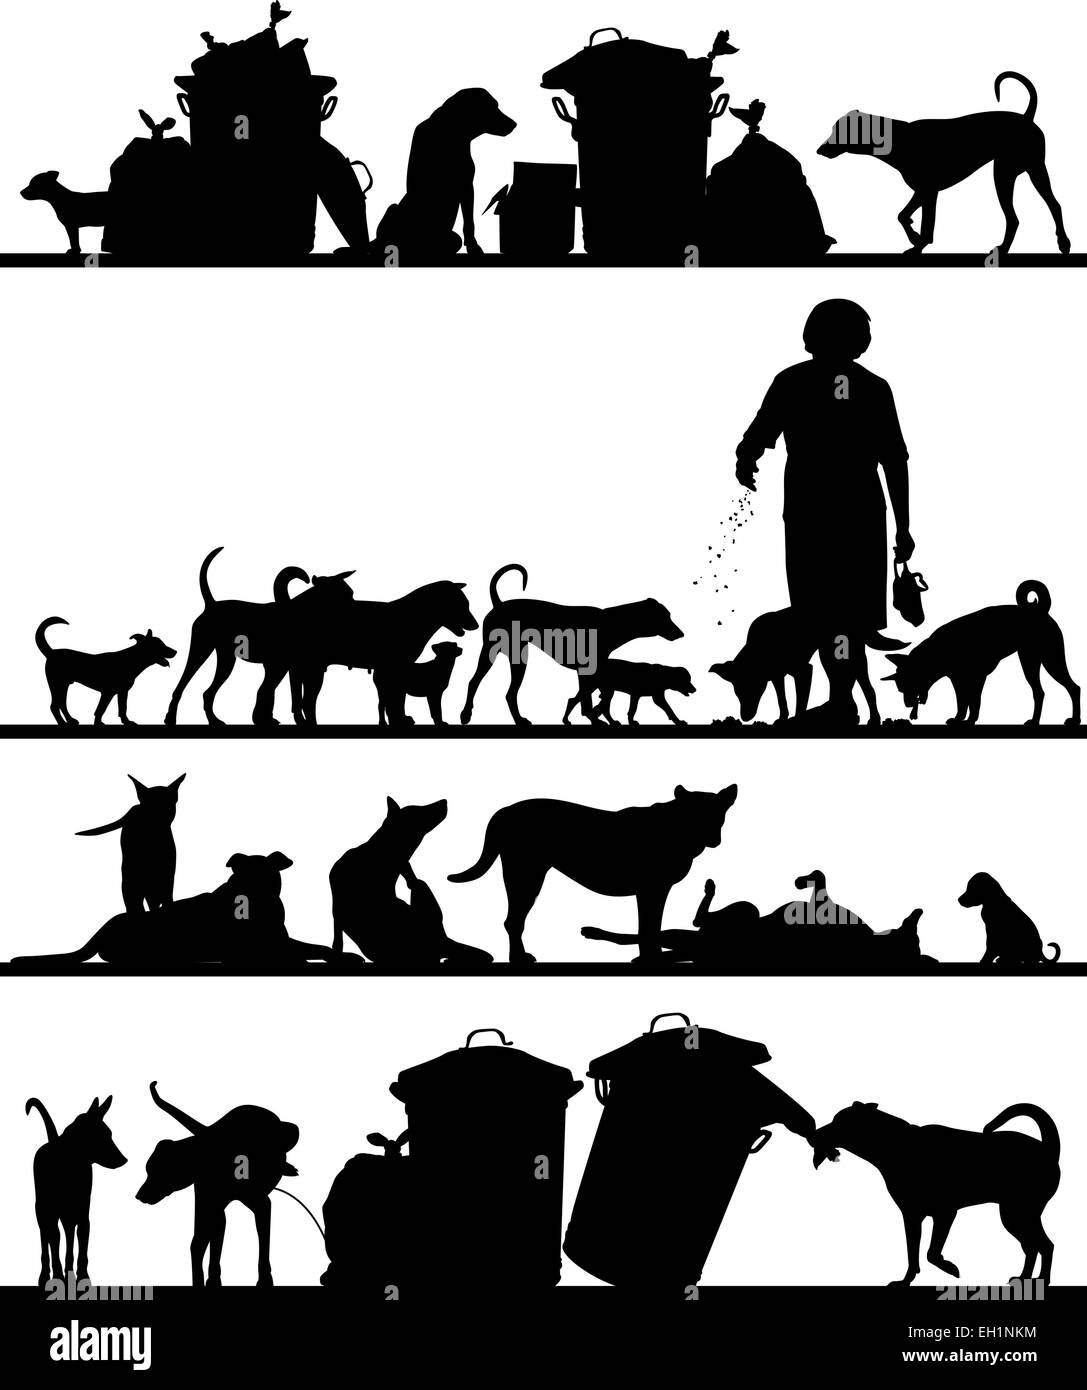 Ensemble de premier plan vectoriel éditable silhouettes de chiens errants à Bangkok avec tous les chiffres en tant qu'objets séparés Illustration de Vecteur